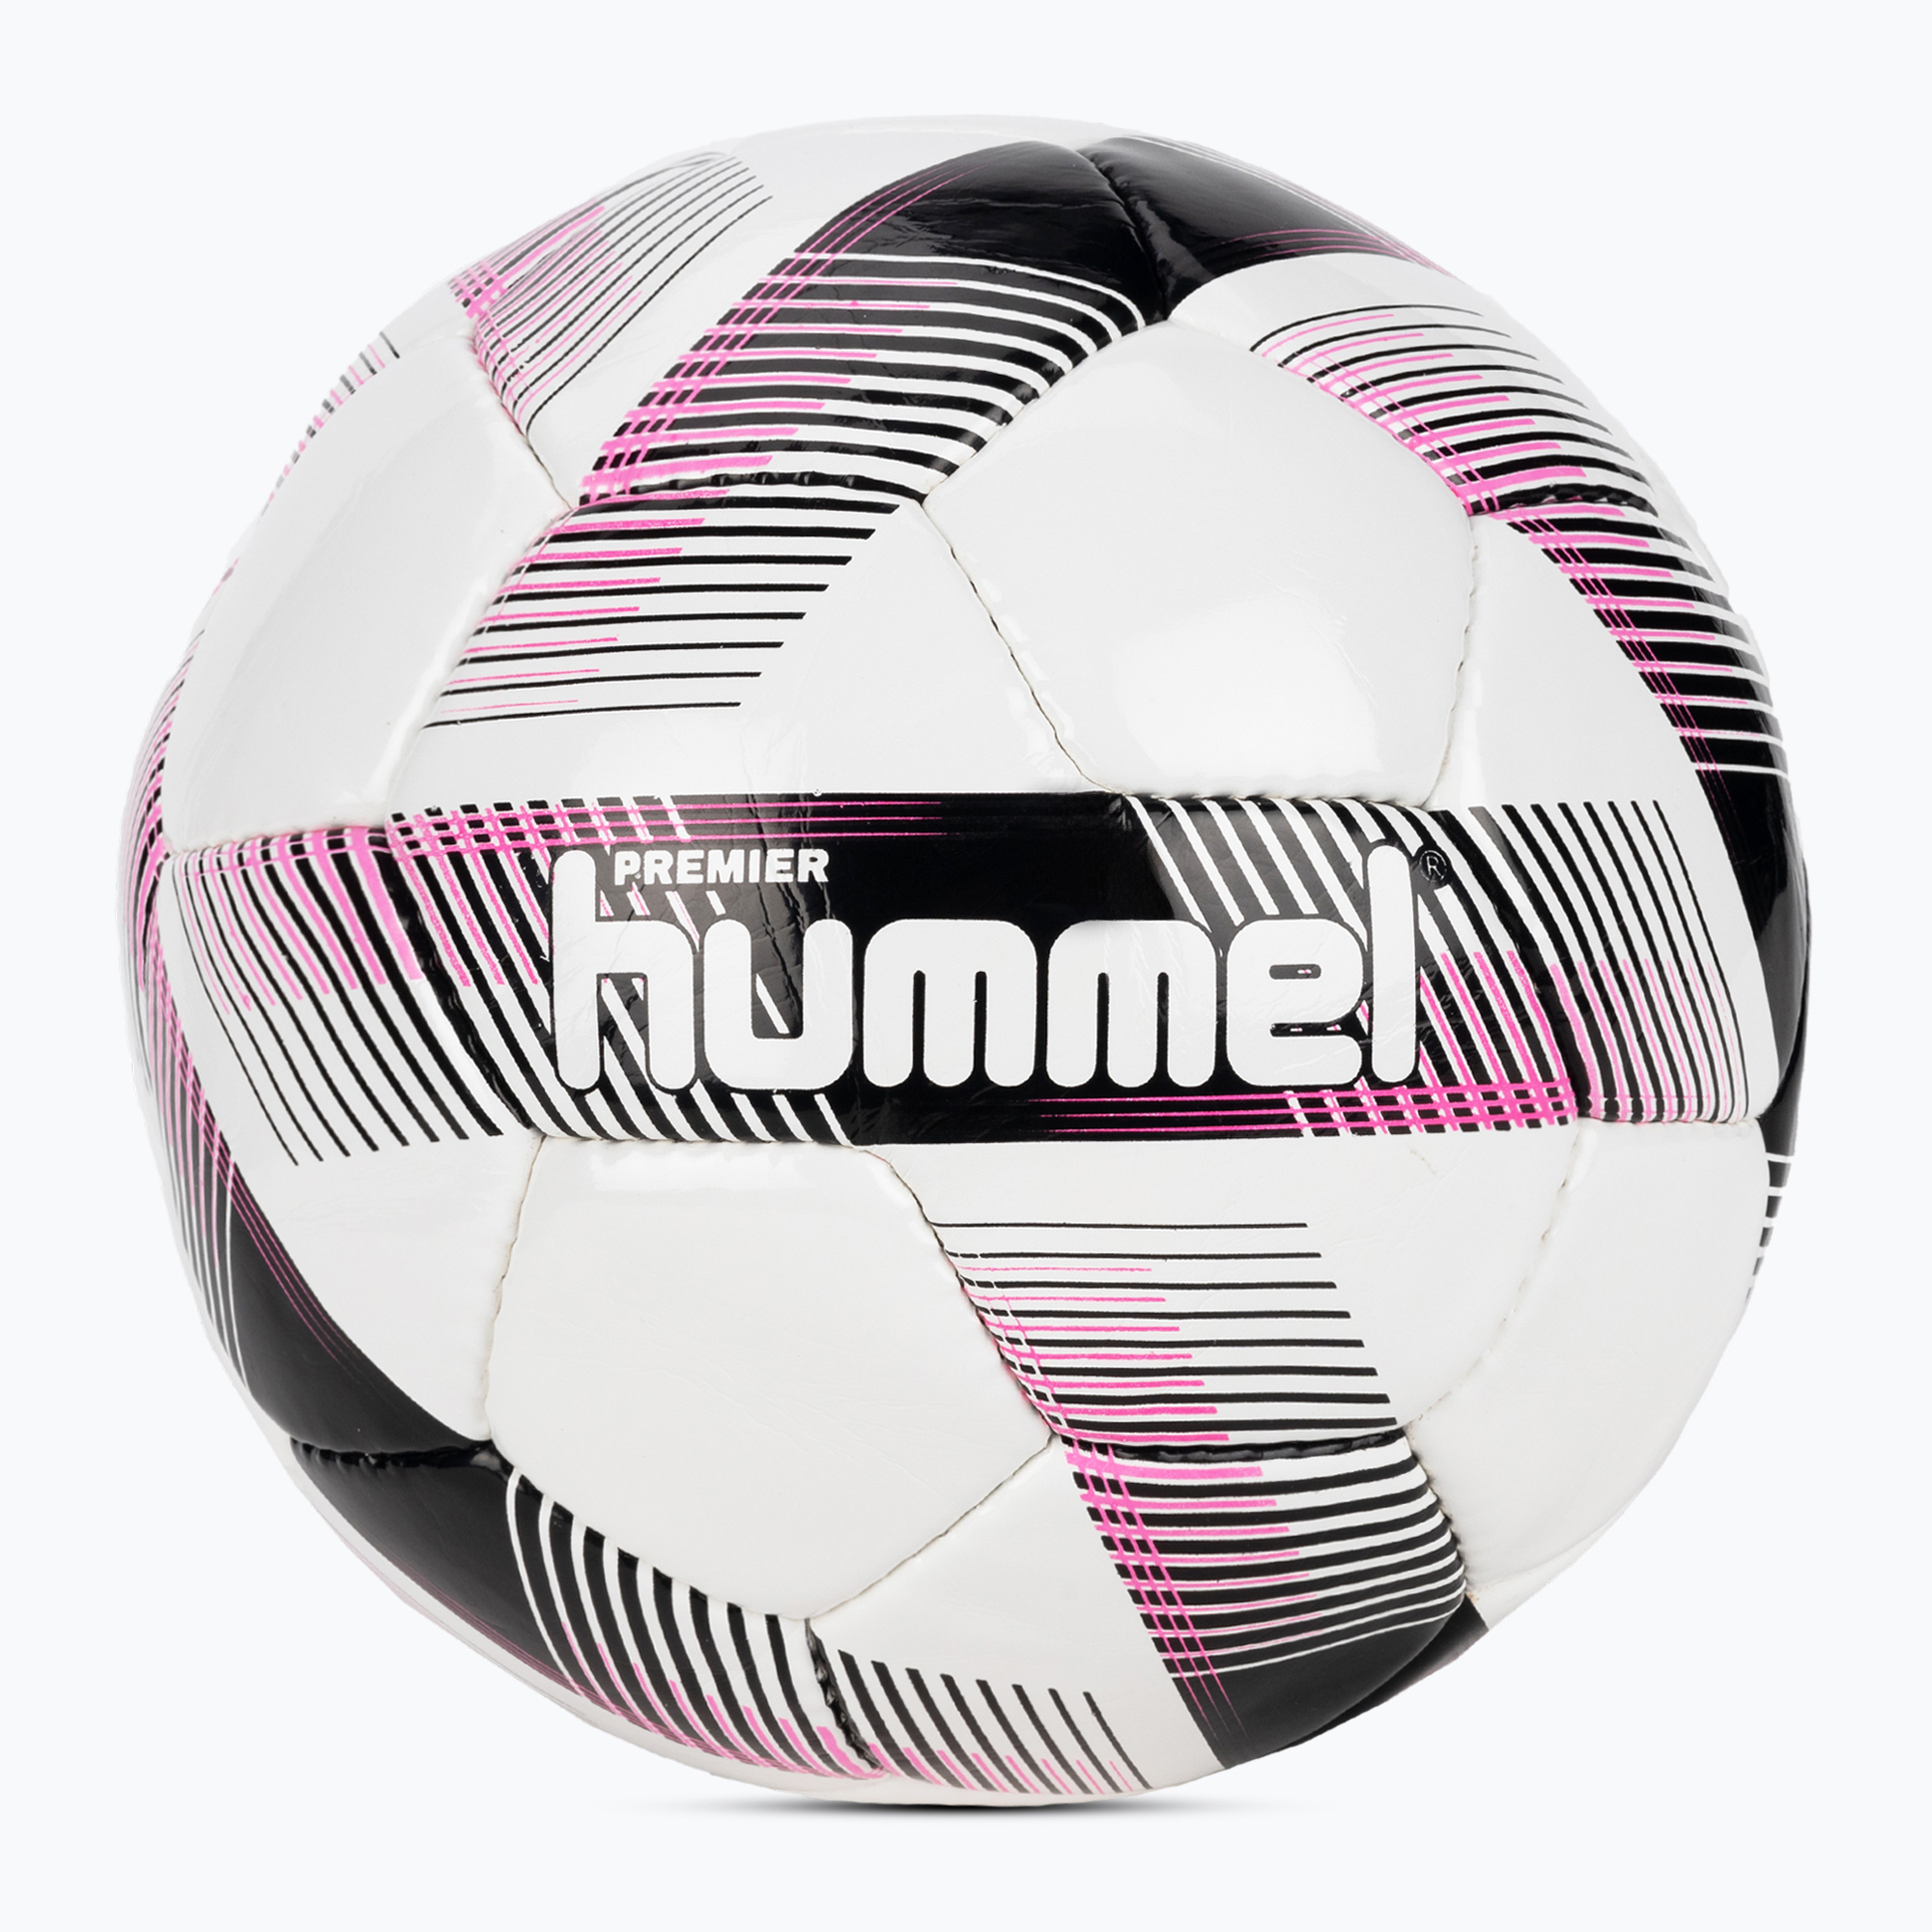 Hummel Premier FB футболна топка бяло/черно/розово размер 5